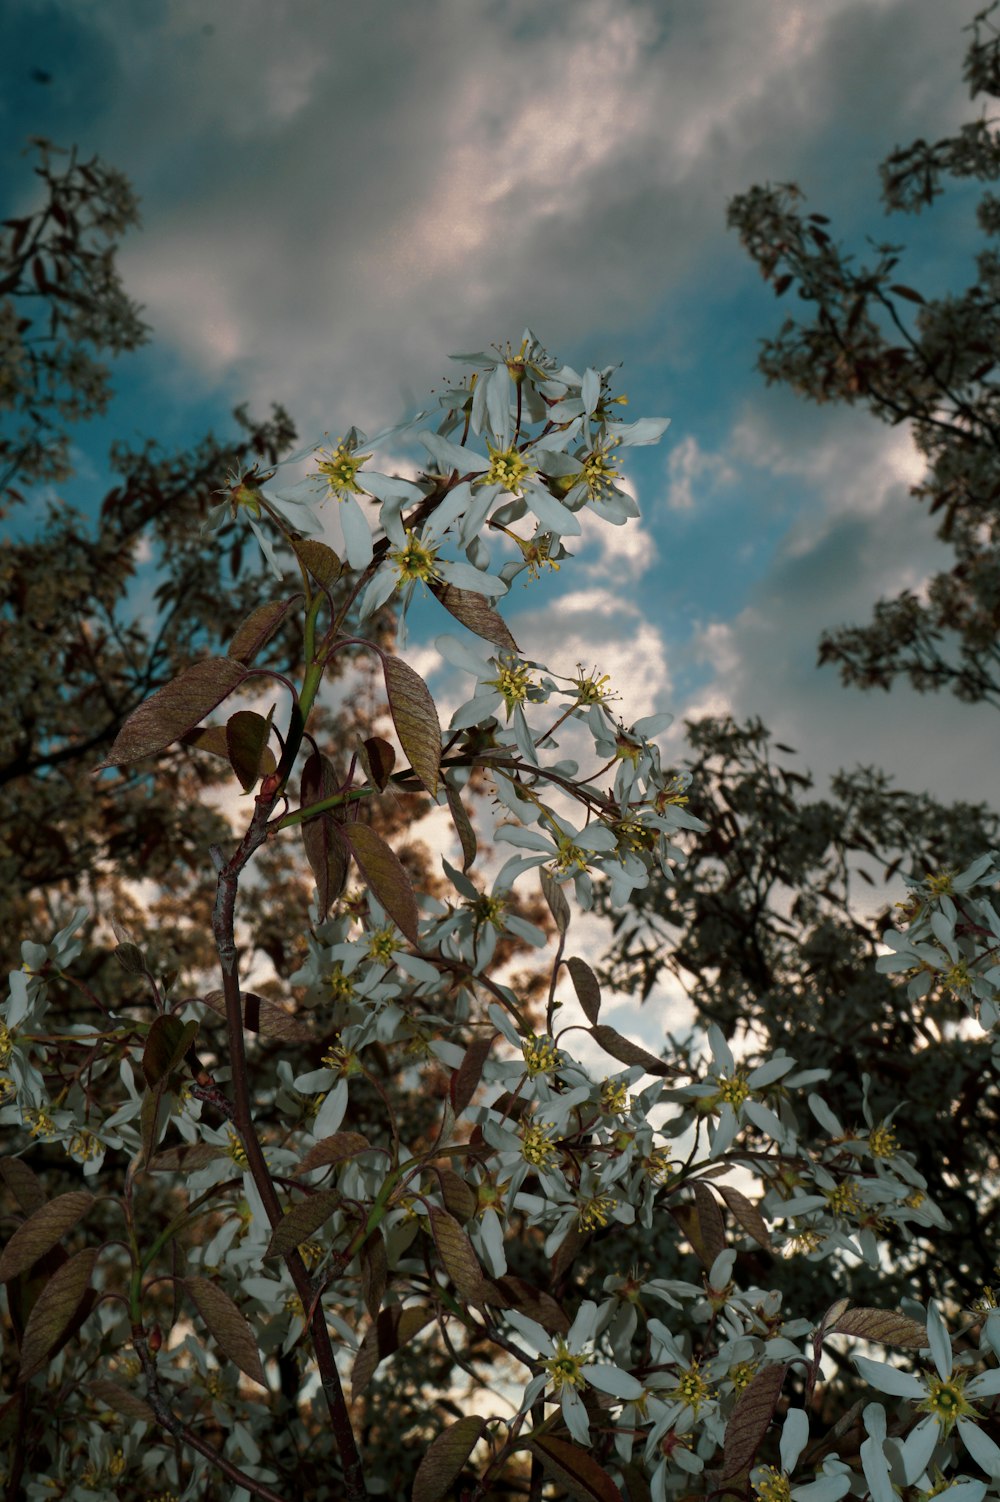 un albero con fiori bianchi e gialli davanti a un cielo nuvoloso